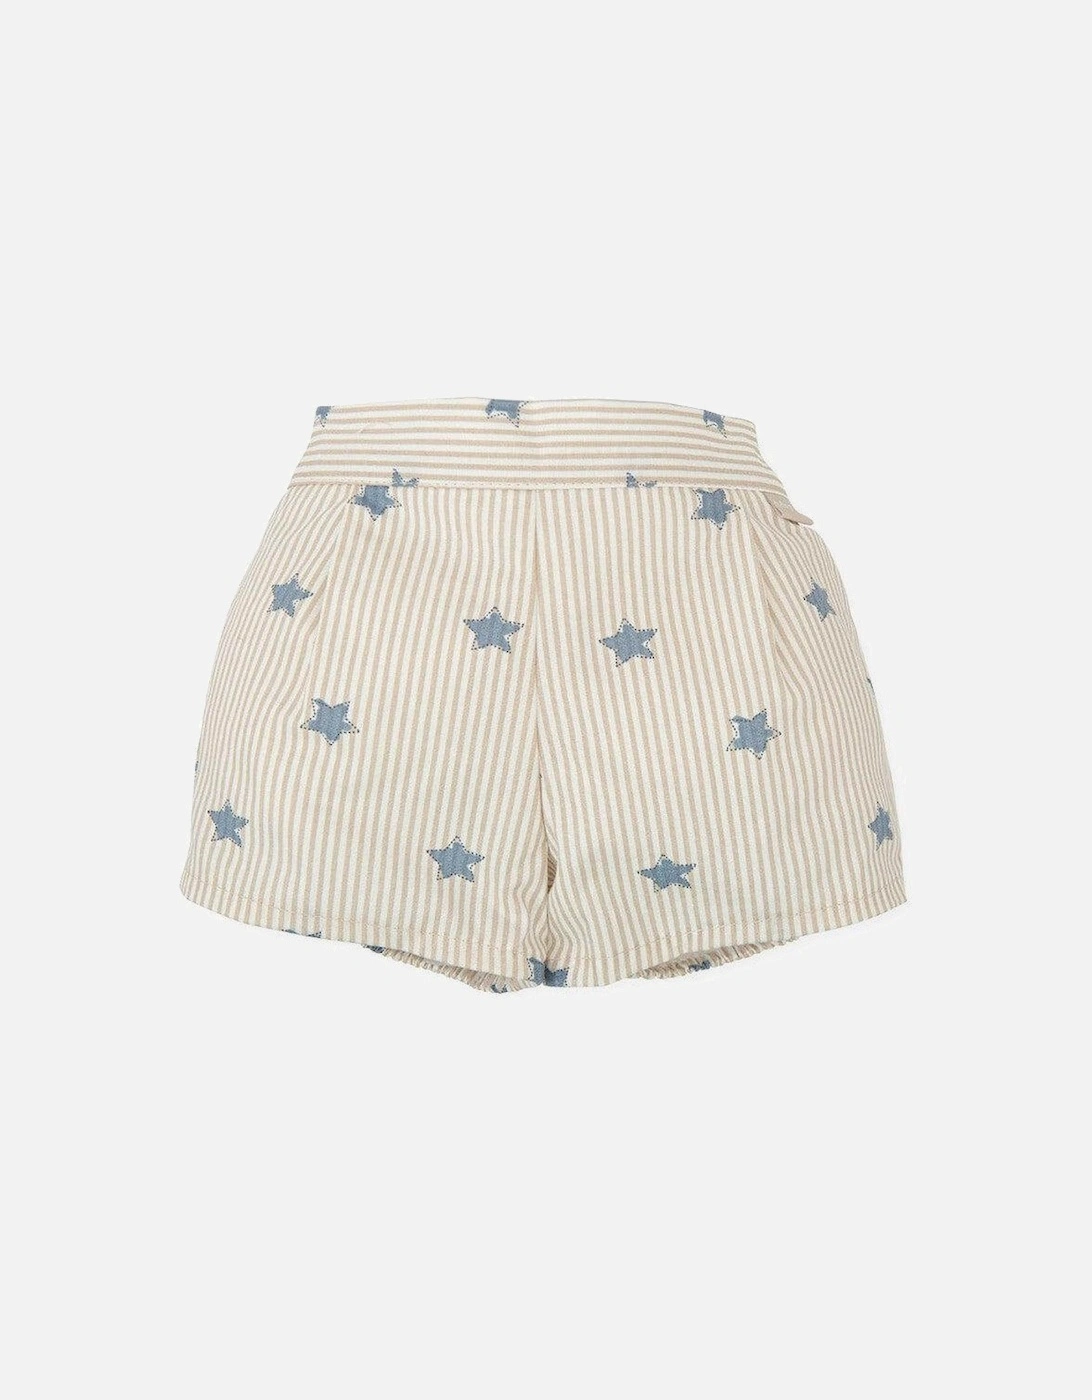 Baby Boys Striped Star Shorts